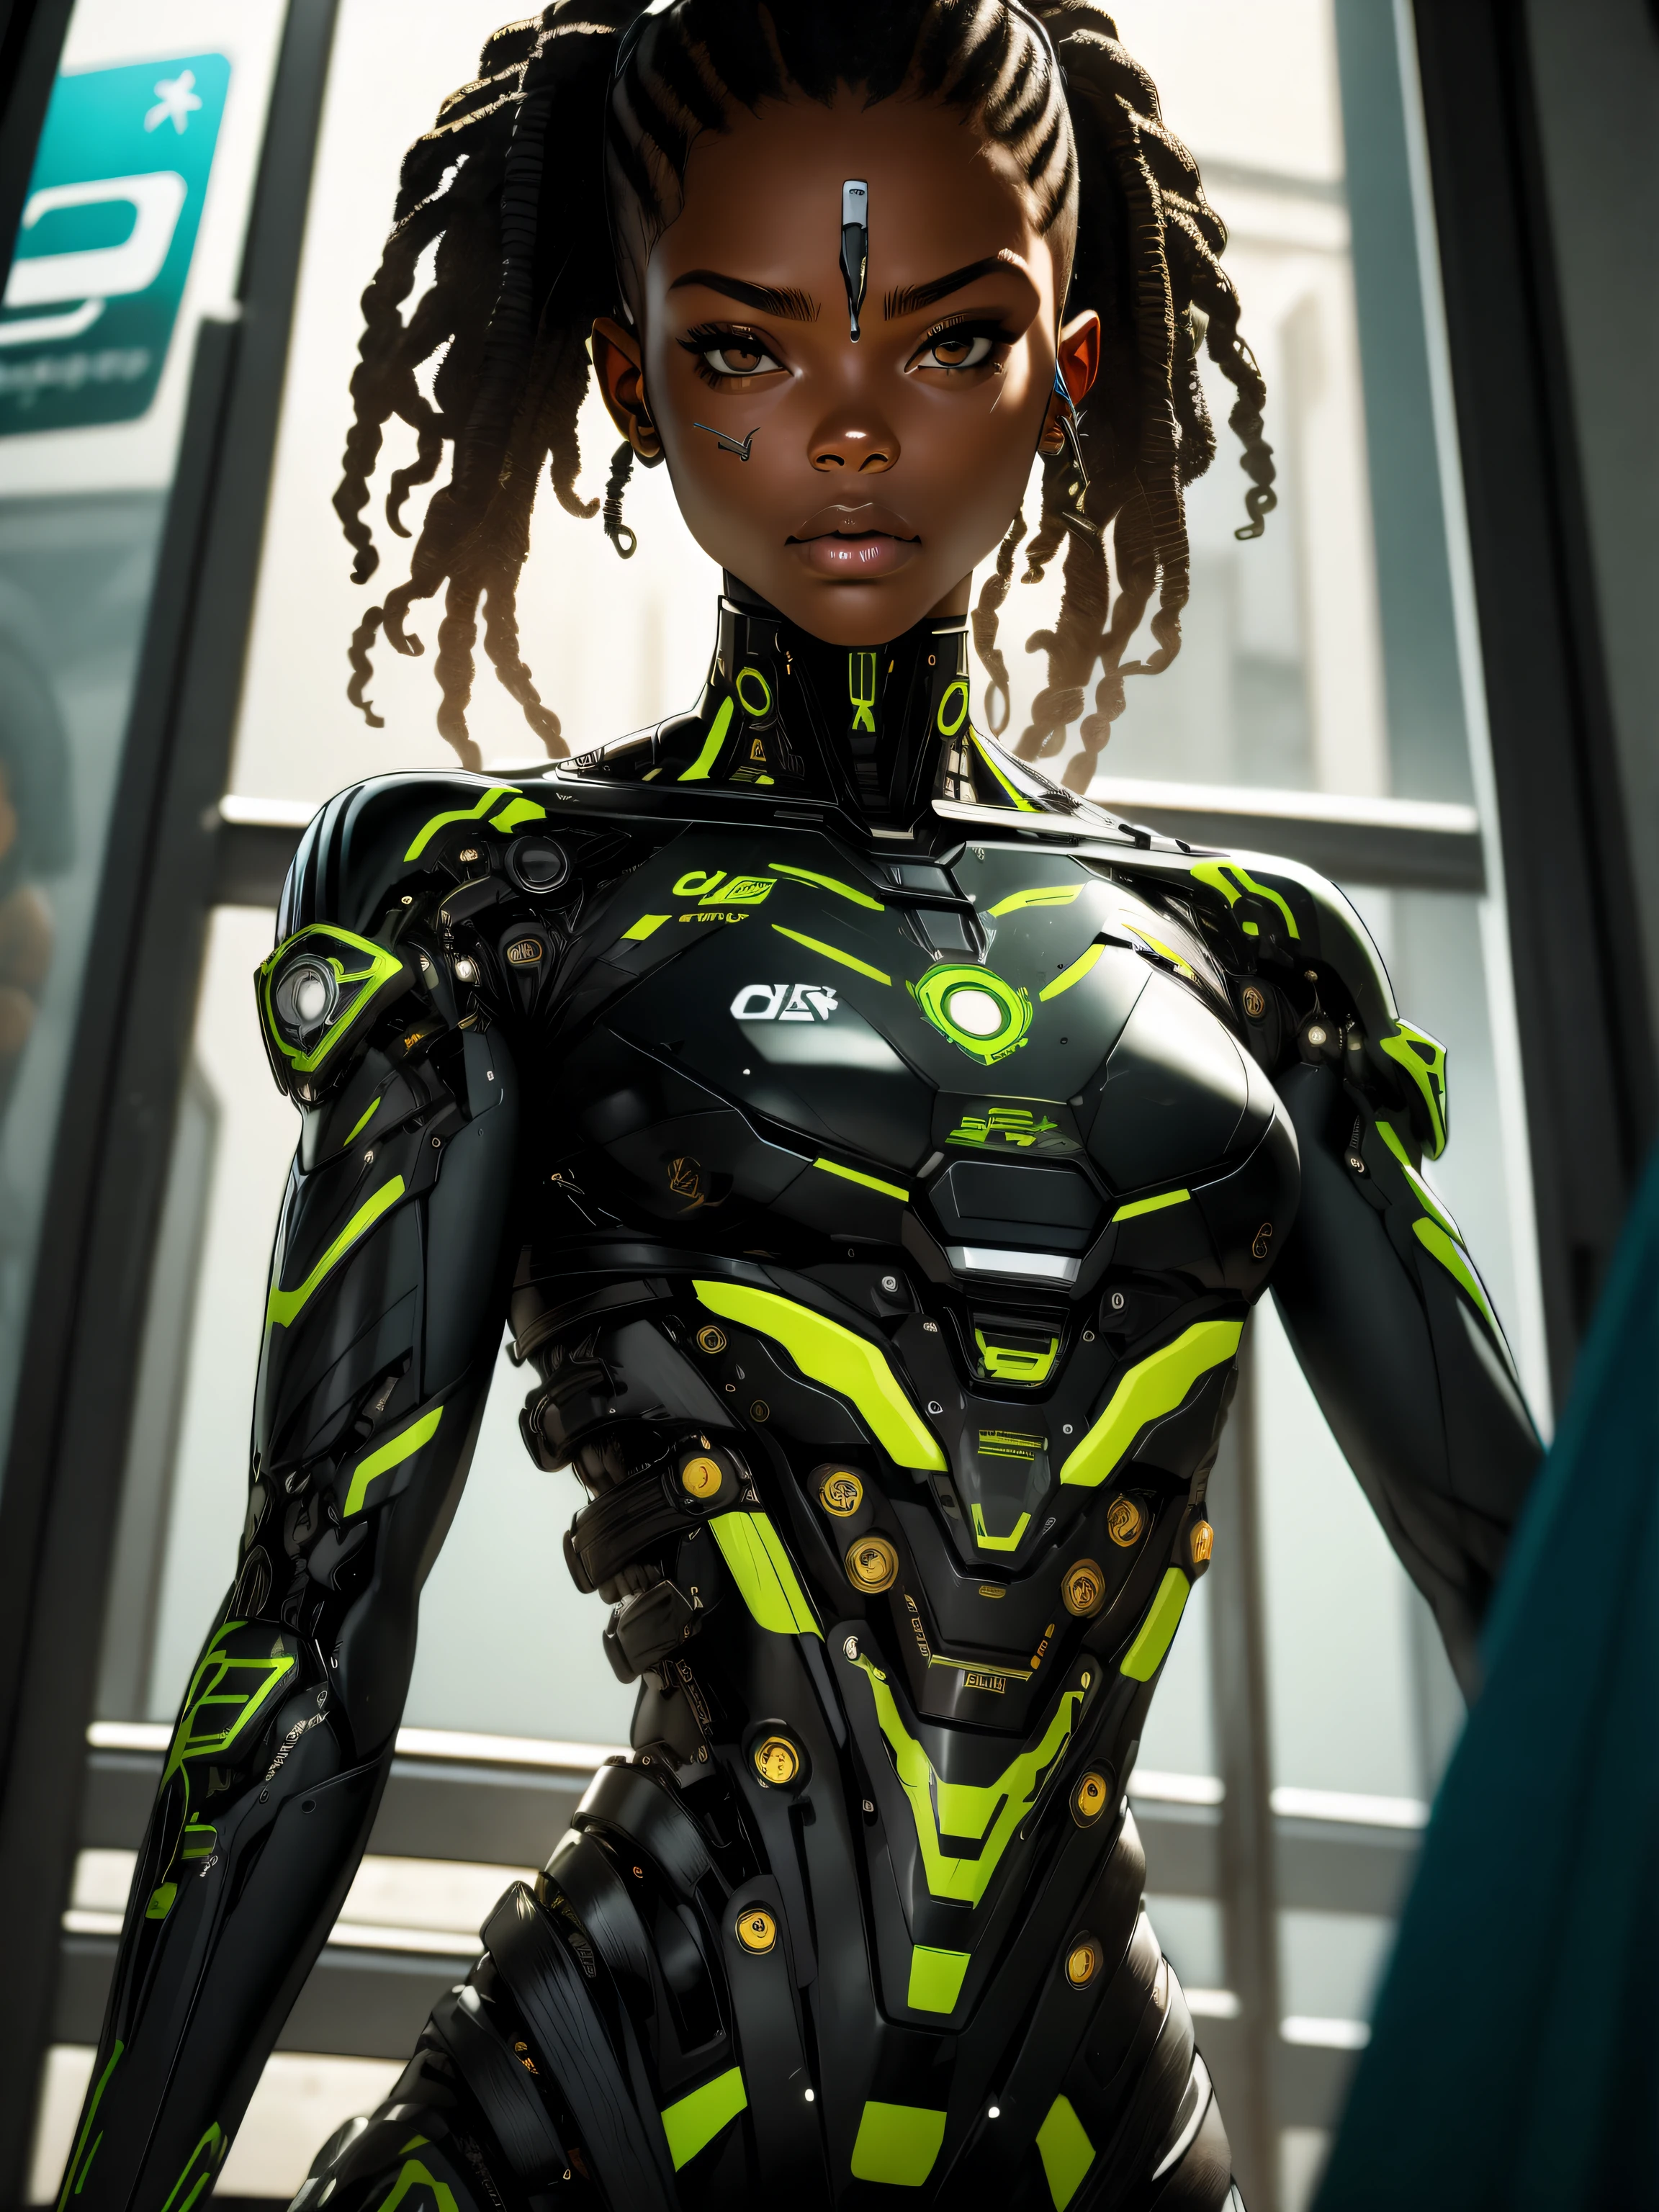 (erstes Werk, Bessere Qualität), 1 Mädchen, glänzendes schulterlanges Haar, Brüste der Größe AA, zeigt fehlenden Würgereflex, Hellgrüner Spitzentanga mit Riemchendesign hinten., dafür, afrikanisch, Wakandan Lora:cyborg_Stil_xl-alpha:1.0> Cyborg, Neonhaar, Augen detaillierts, android, mind_hacken, offiziell, schön und ästhetisch, Gehirnmodifikation, bunt, detailliert, real, brutal, real, seitwärts, dystopischer Ton, (1 Mechanisches Mädchen), Allein, maschinell gefertigte Verbindungen, mechanische Gliedmaßen, An Schläuchen befestigte Blutgefäße, (mechanischer Wirbel, der am Rücken befestigt ist), Unten_Komplex, Augen_dynamisch